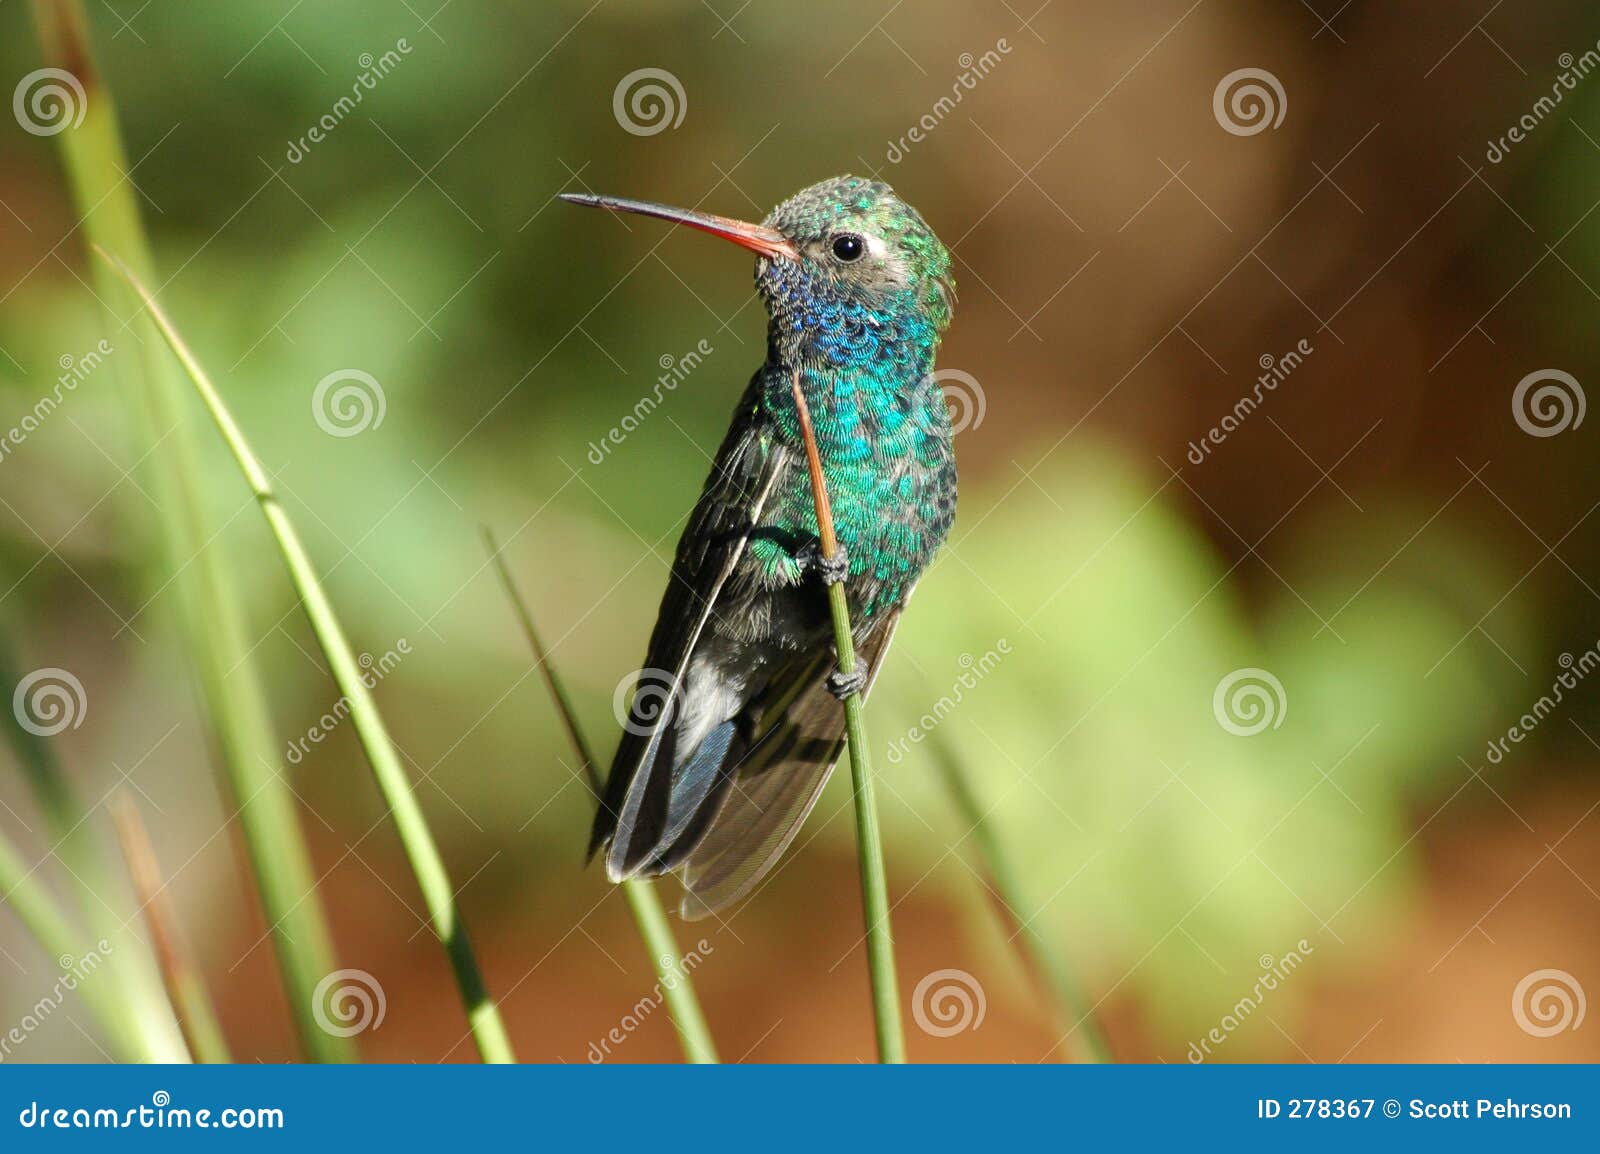 perched hummingbird